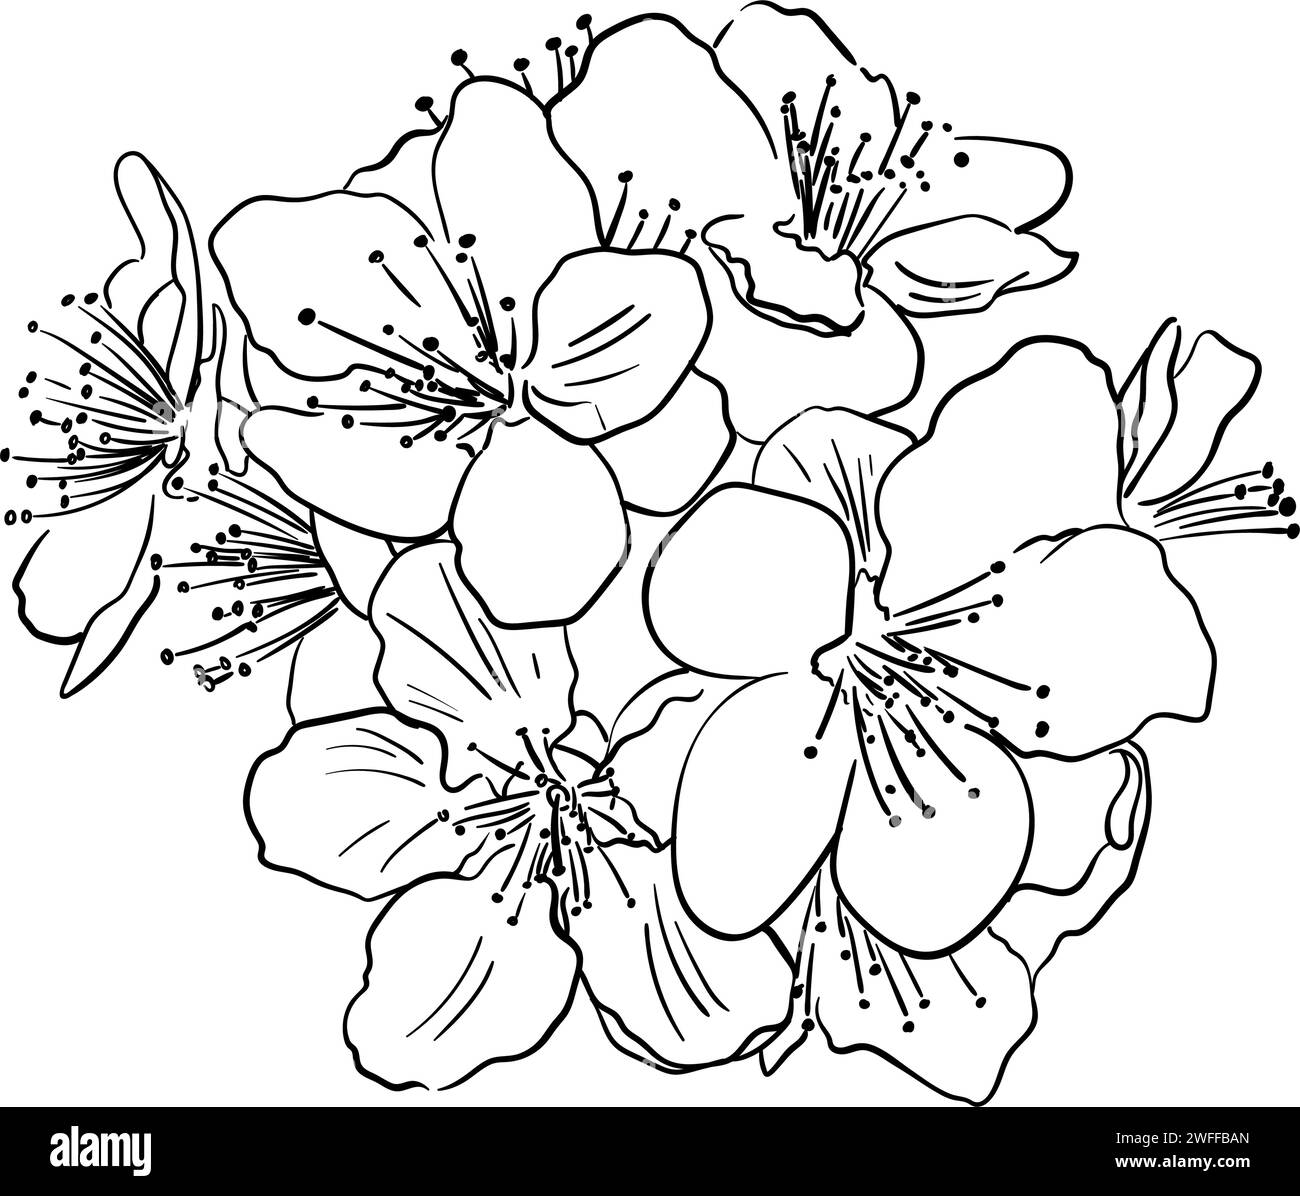 Handgezeichnete Vektorzeichnung im Doodle-Stil. Blühender Obstzweig, isoliert auf weißem Hintergrund. Zarte Blumen, Blütenblätter. Frühlingszeit, Sakura Stock Vektor